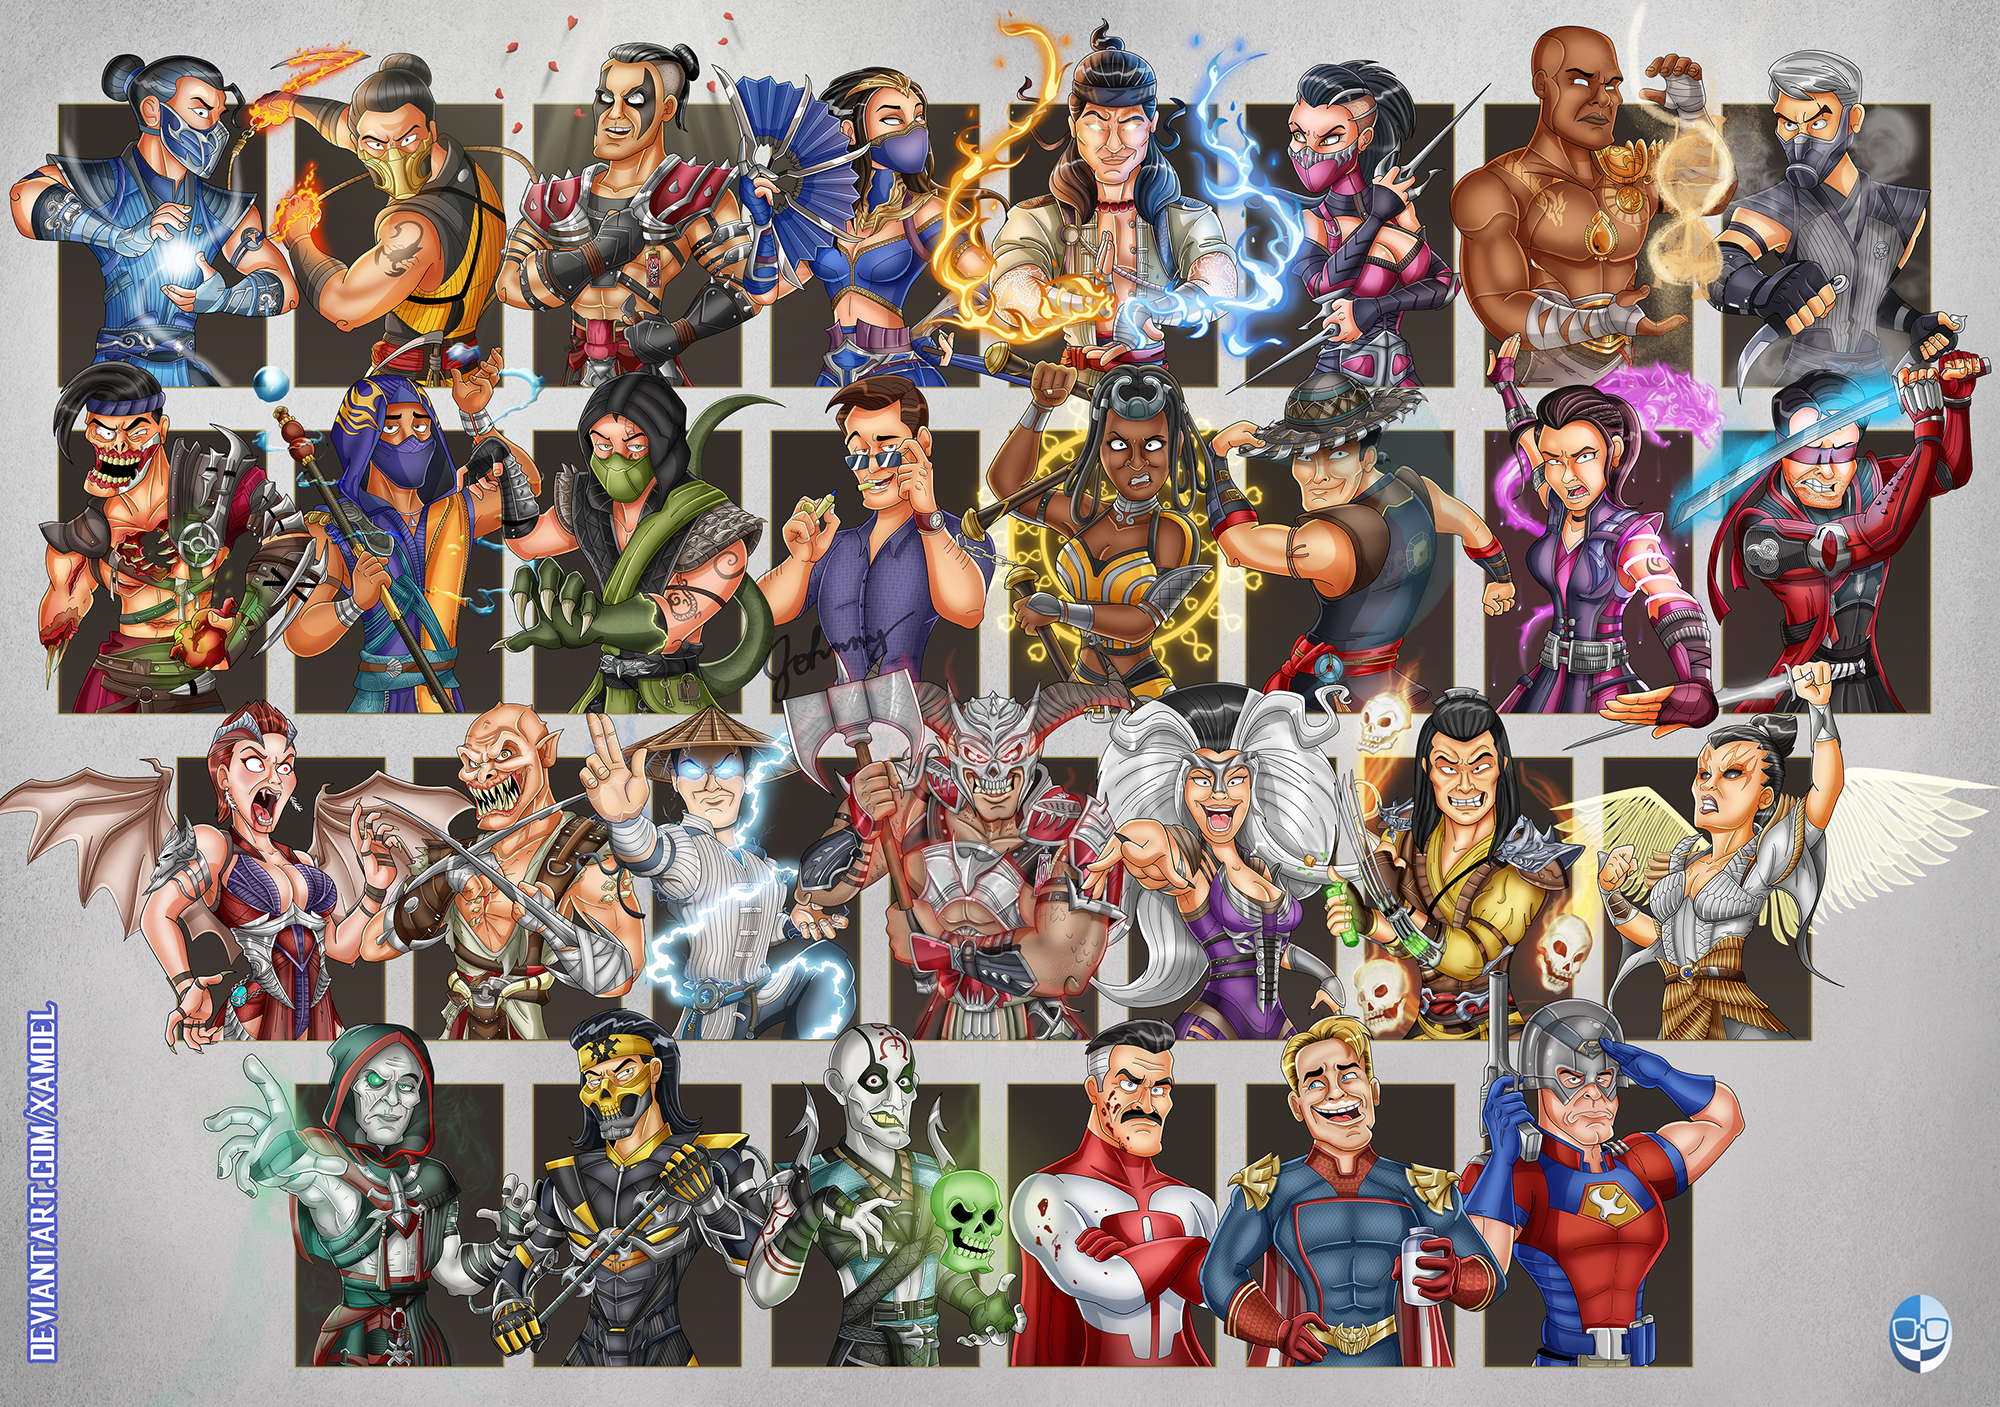 Galáxia Mortal Kombat - Fan art do roster do Mortal Kombat 11 atualizada  com todos os personagens do Kombat Pack 1. 😍 Créditos pela imagem: Xamoel  (Deviantart)